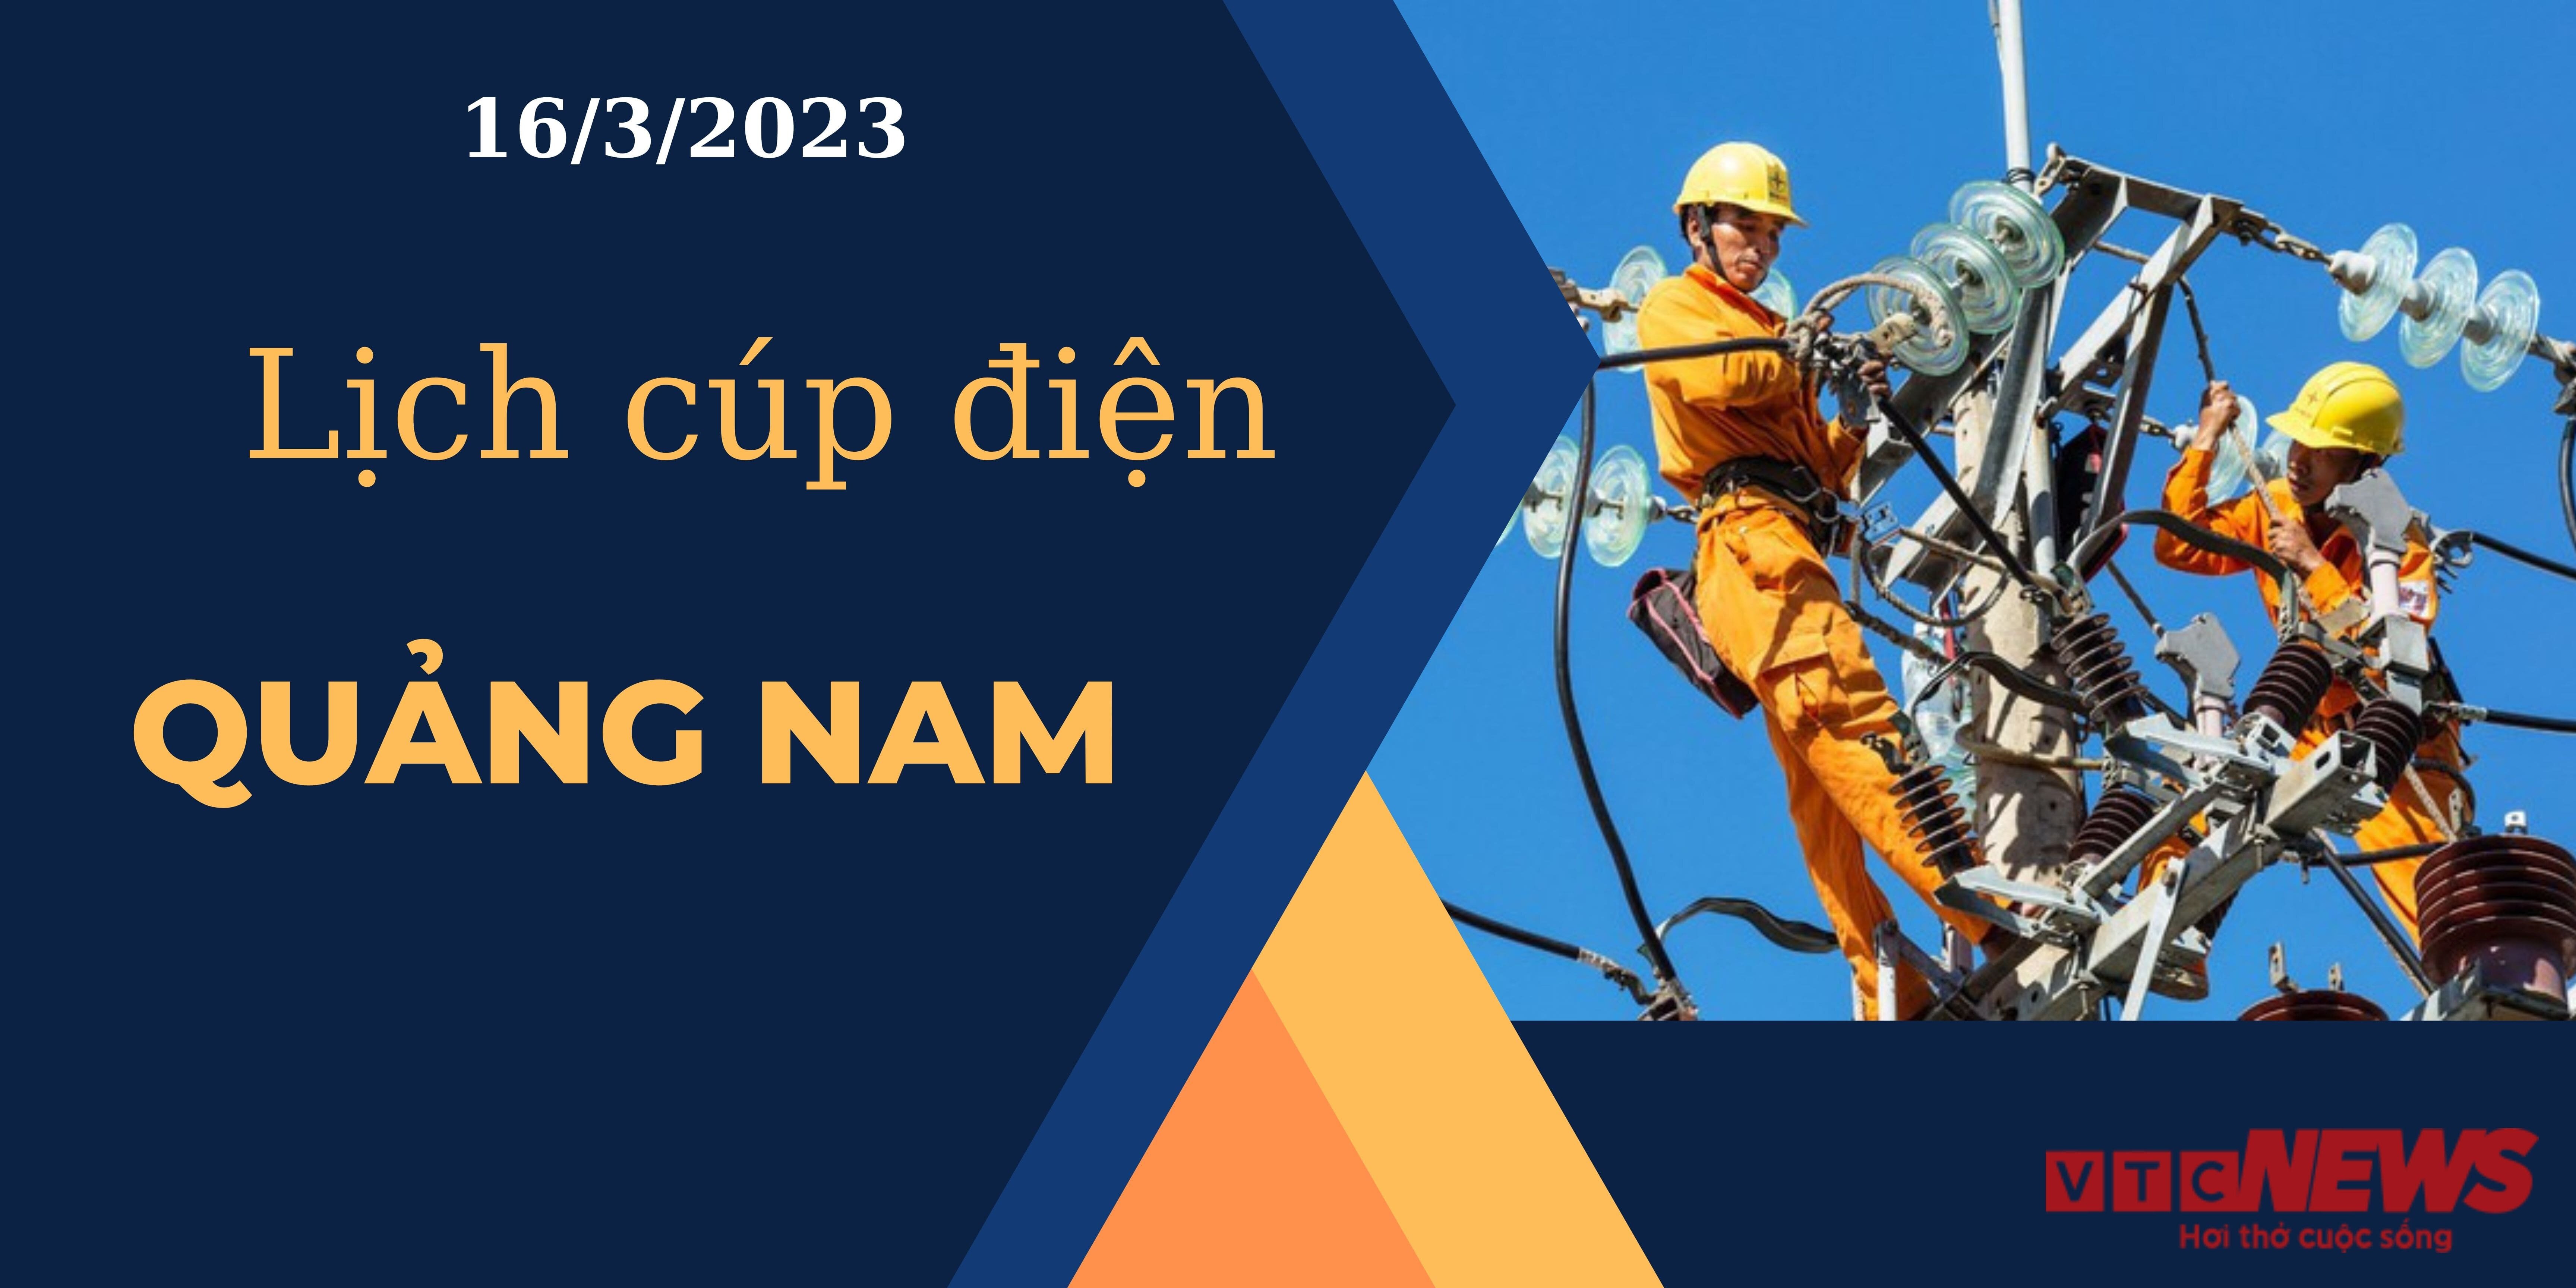 Lịch cúp điện hôm nay tại Quảng Nam ngày 16/3/2023 - 1